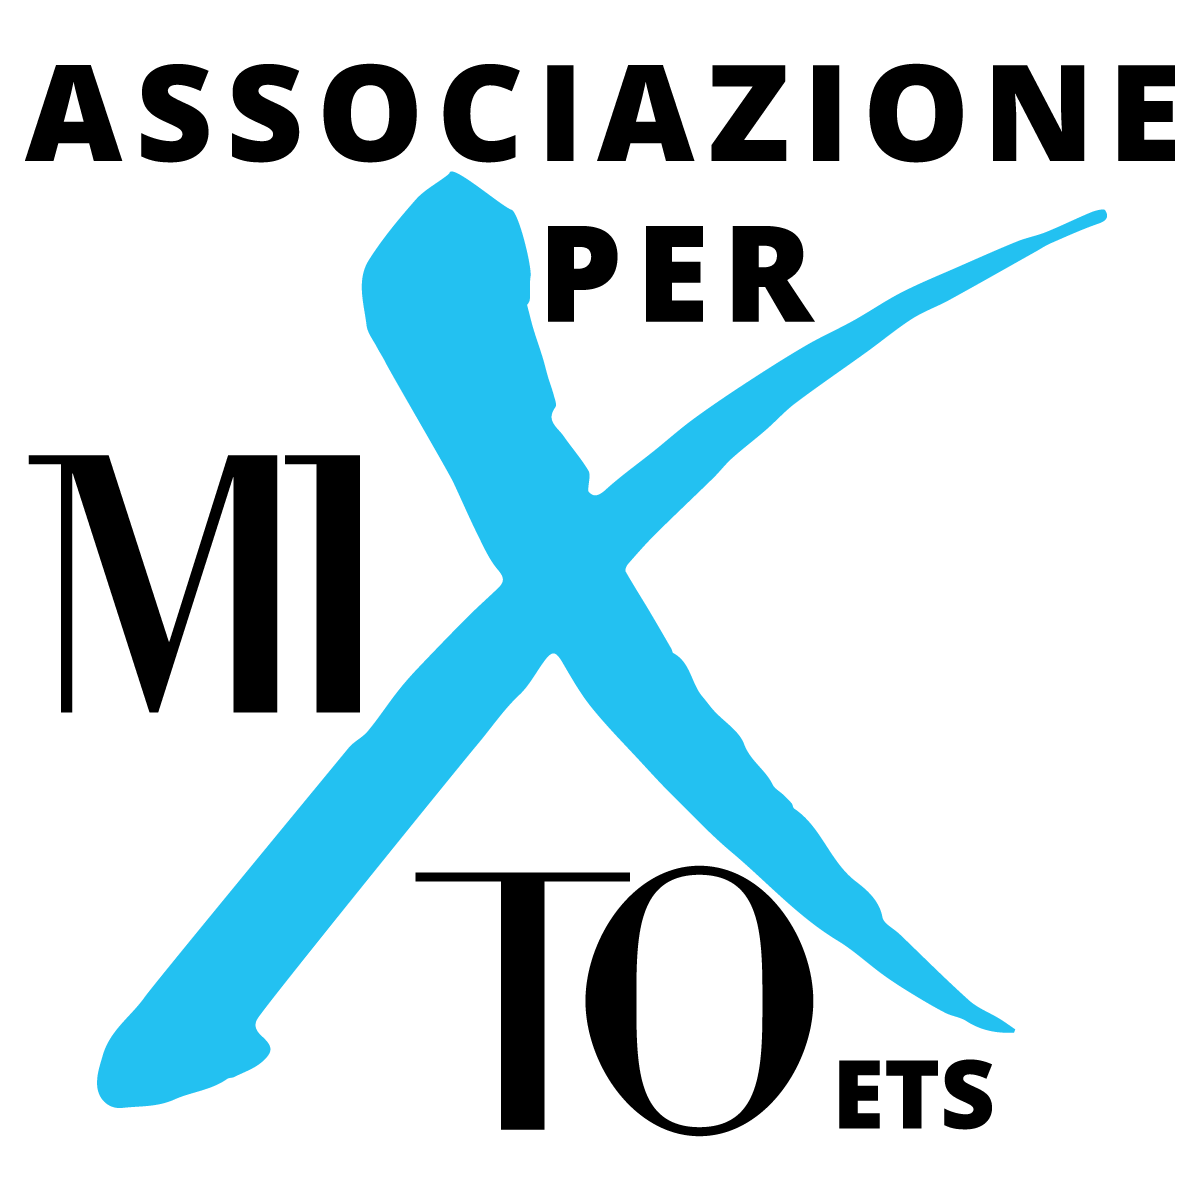 Associazione per MITO ETS